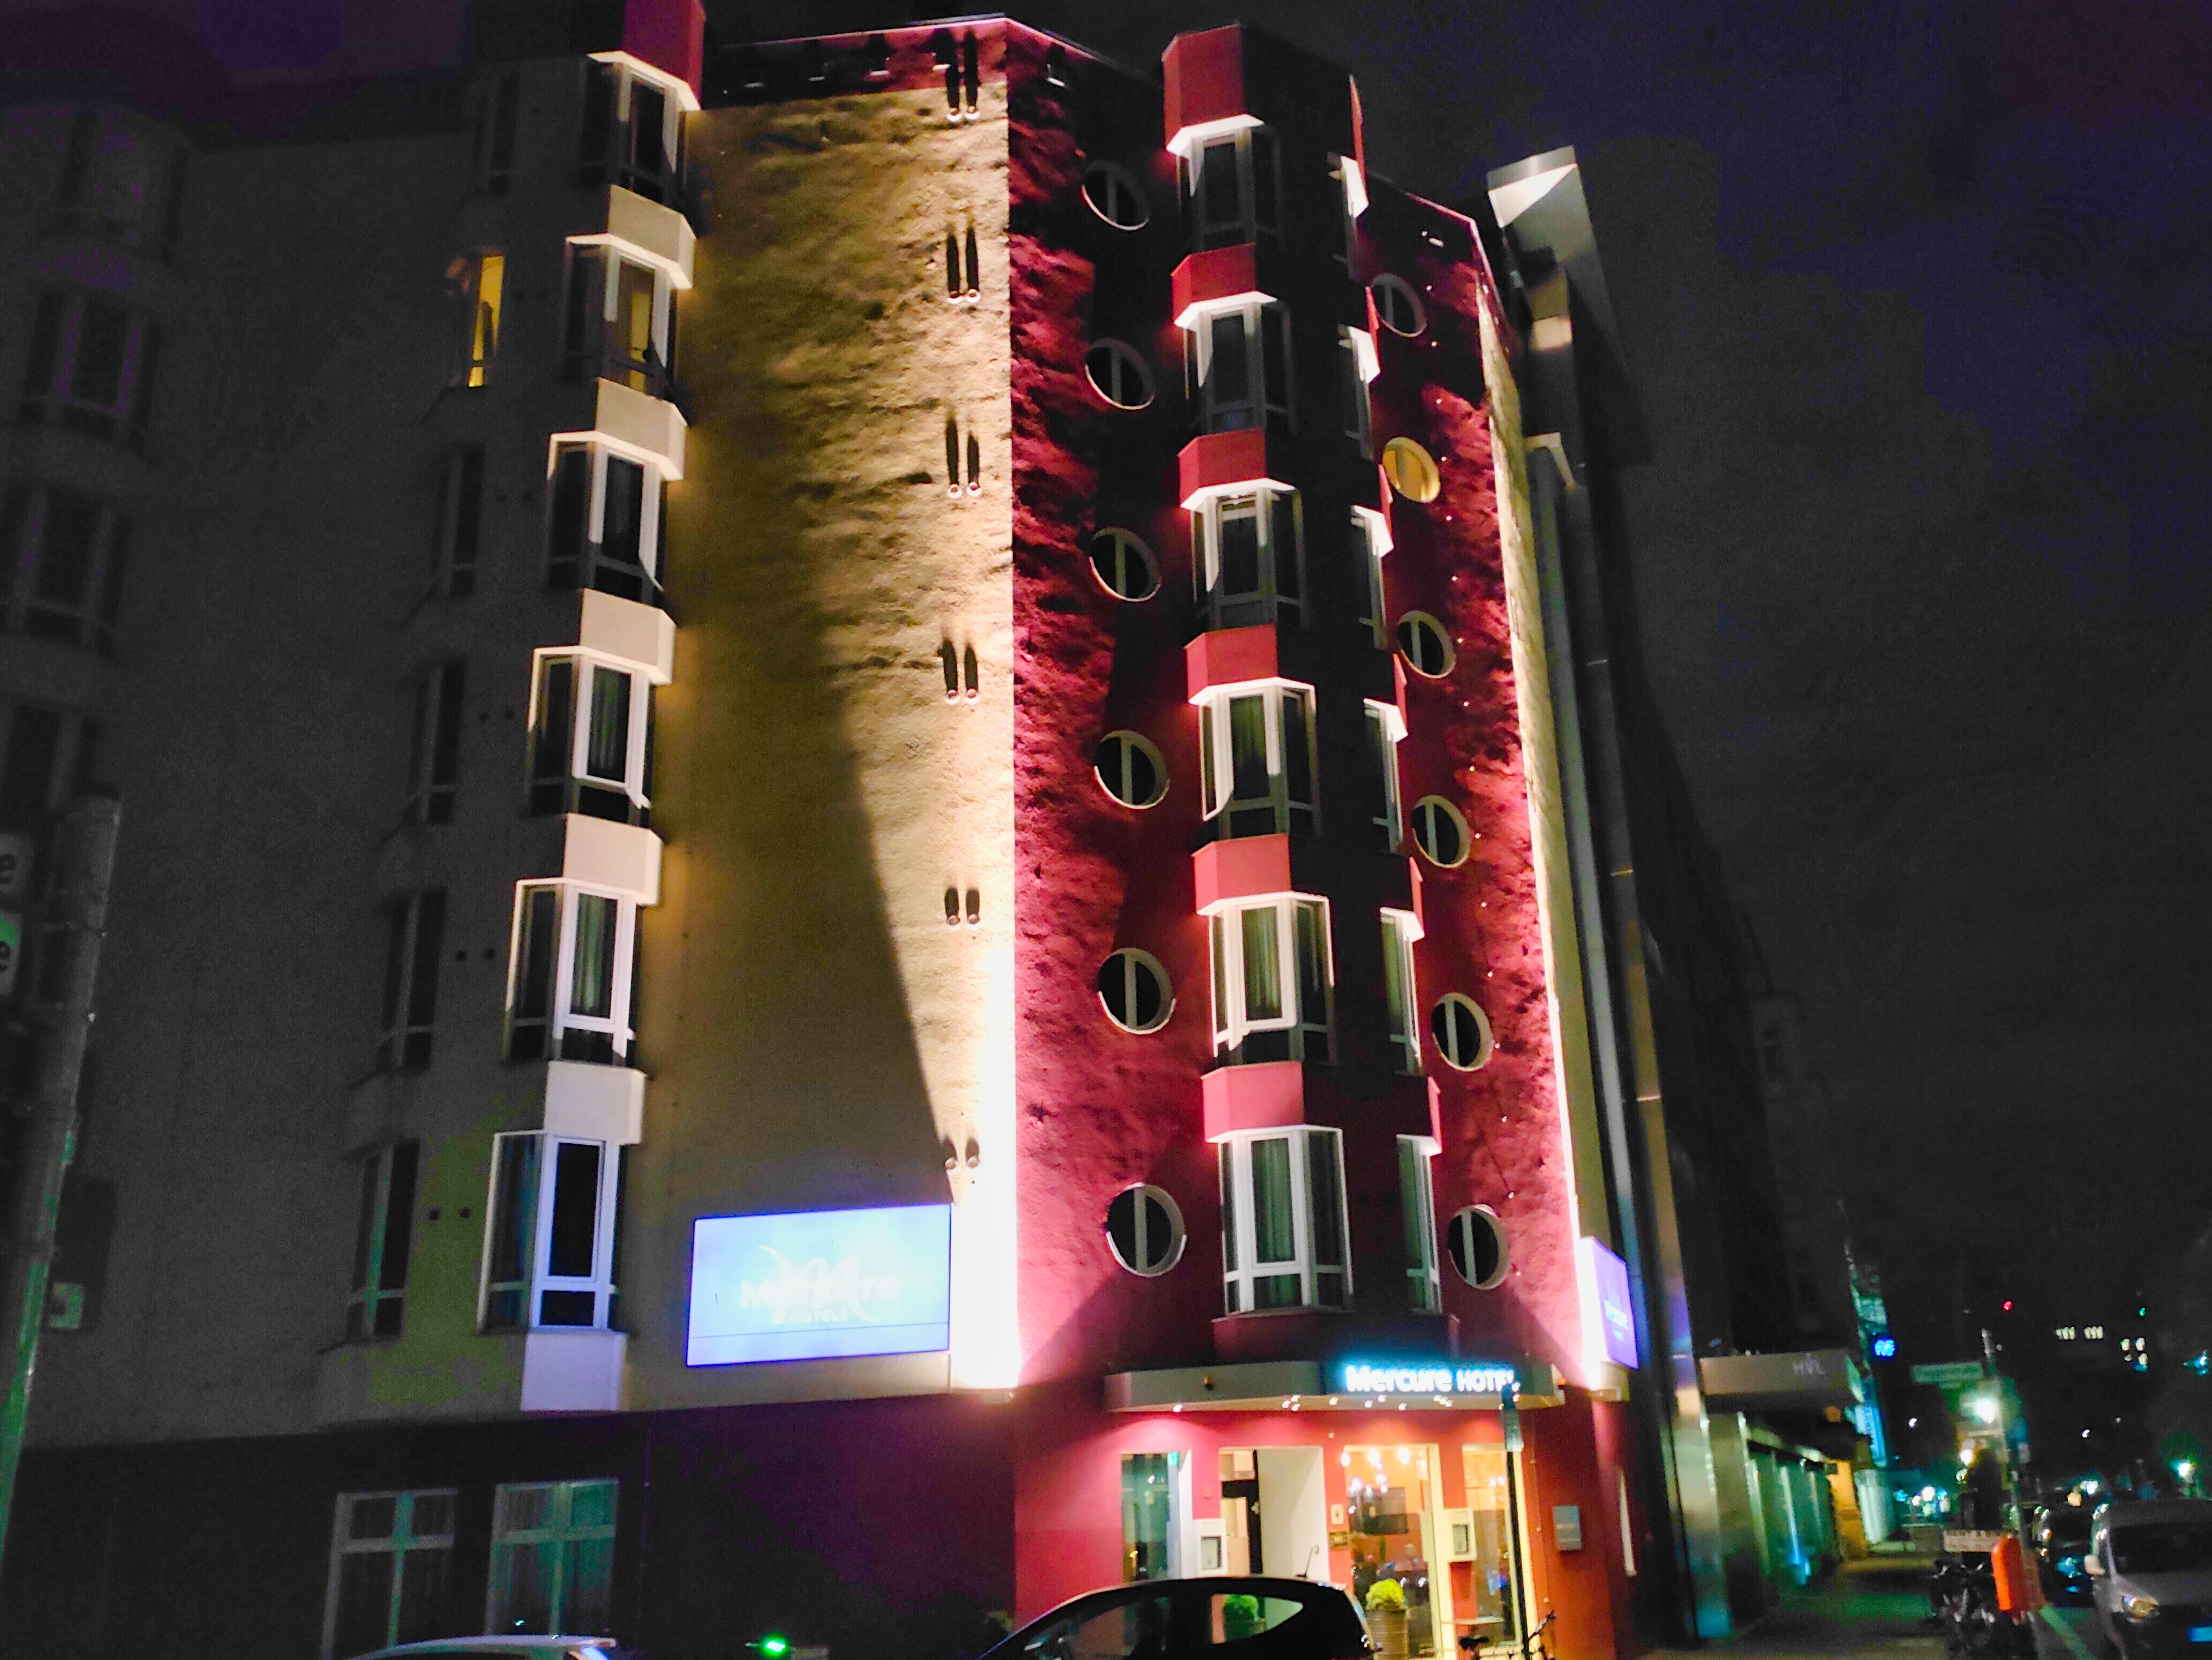 Mercure Hotel Zentrum, Berlin.
